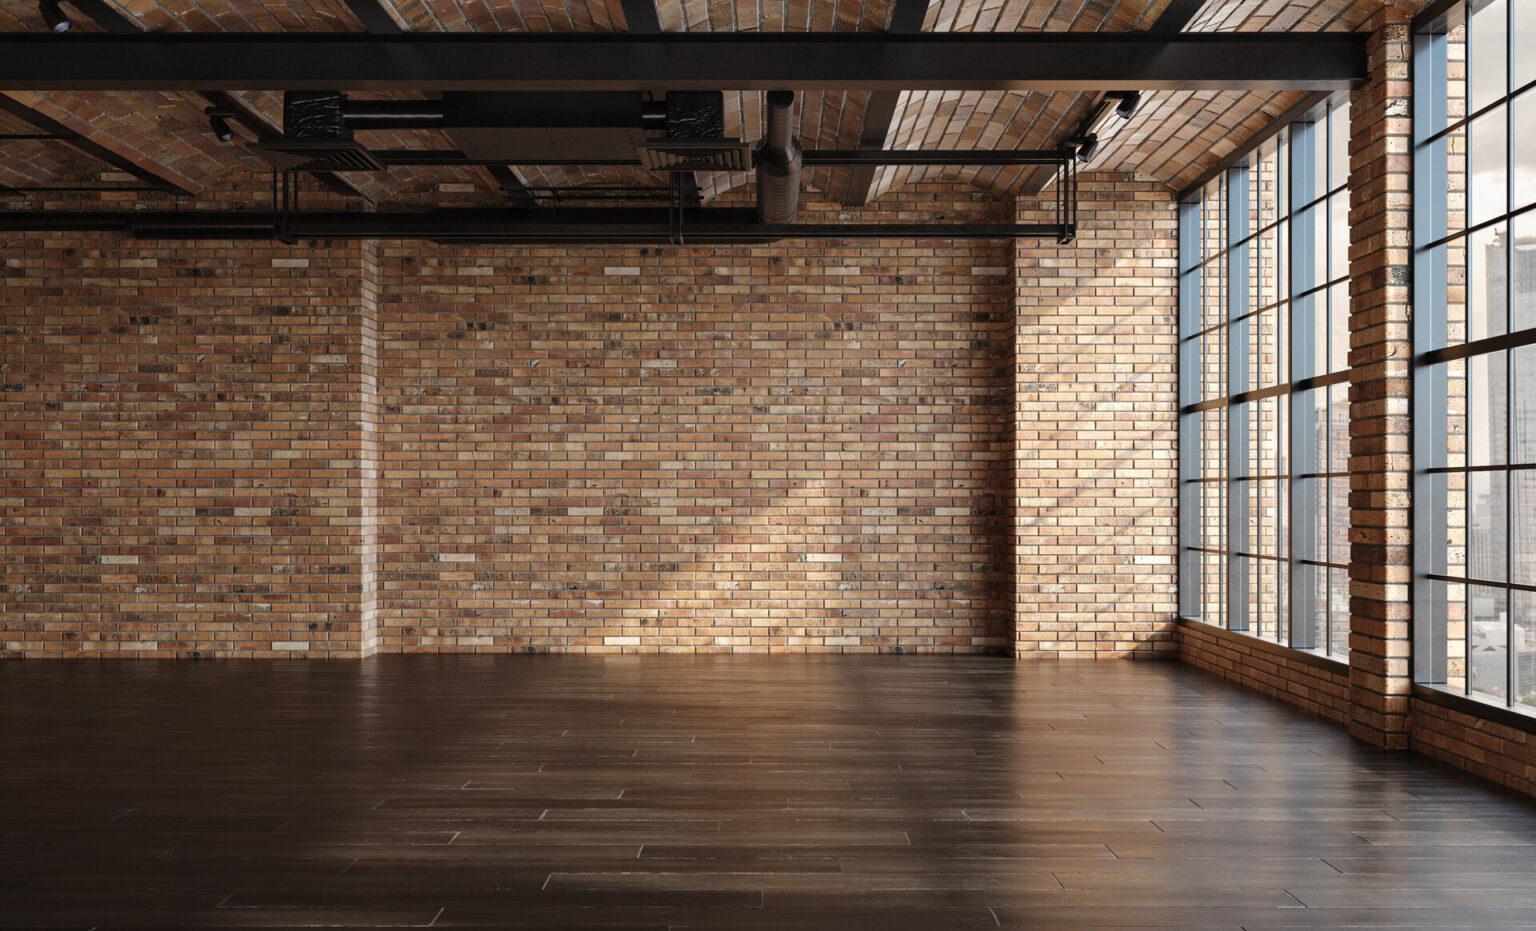 Leere Loft-Wohnung, Industriestil, gemauerte Wand, Holzfußboden und große, bodentiefe Fenster.